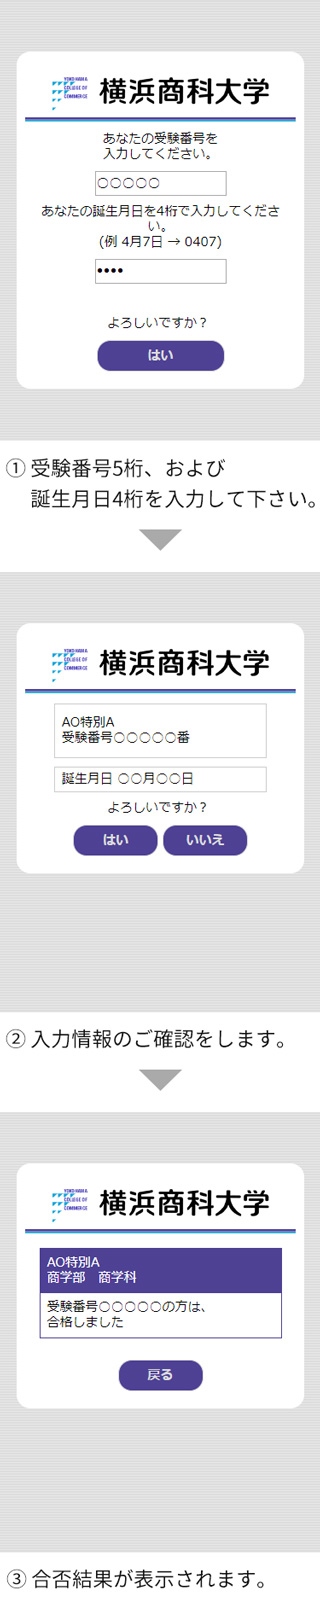 インターネットによる合否照会システム利用方法 入試 イベント情報 横浜商科大学